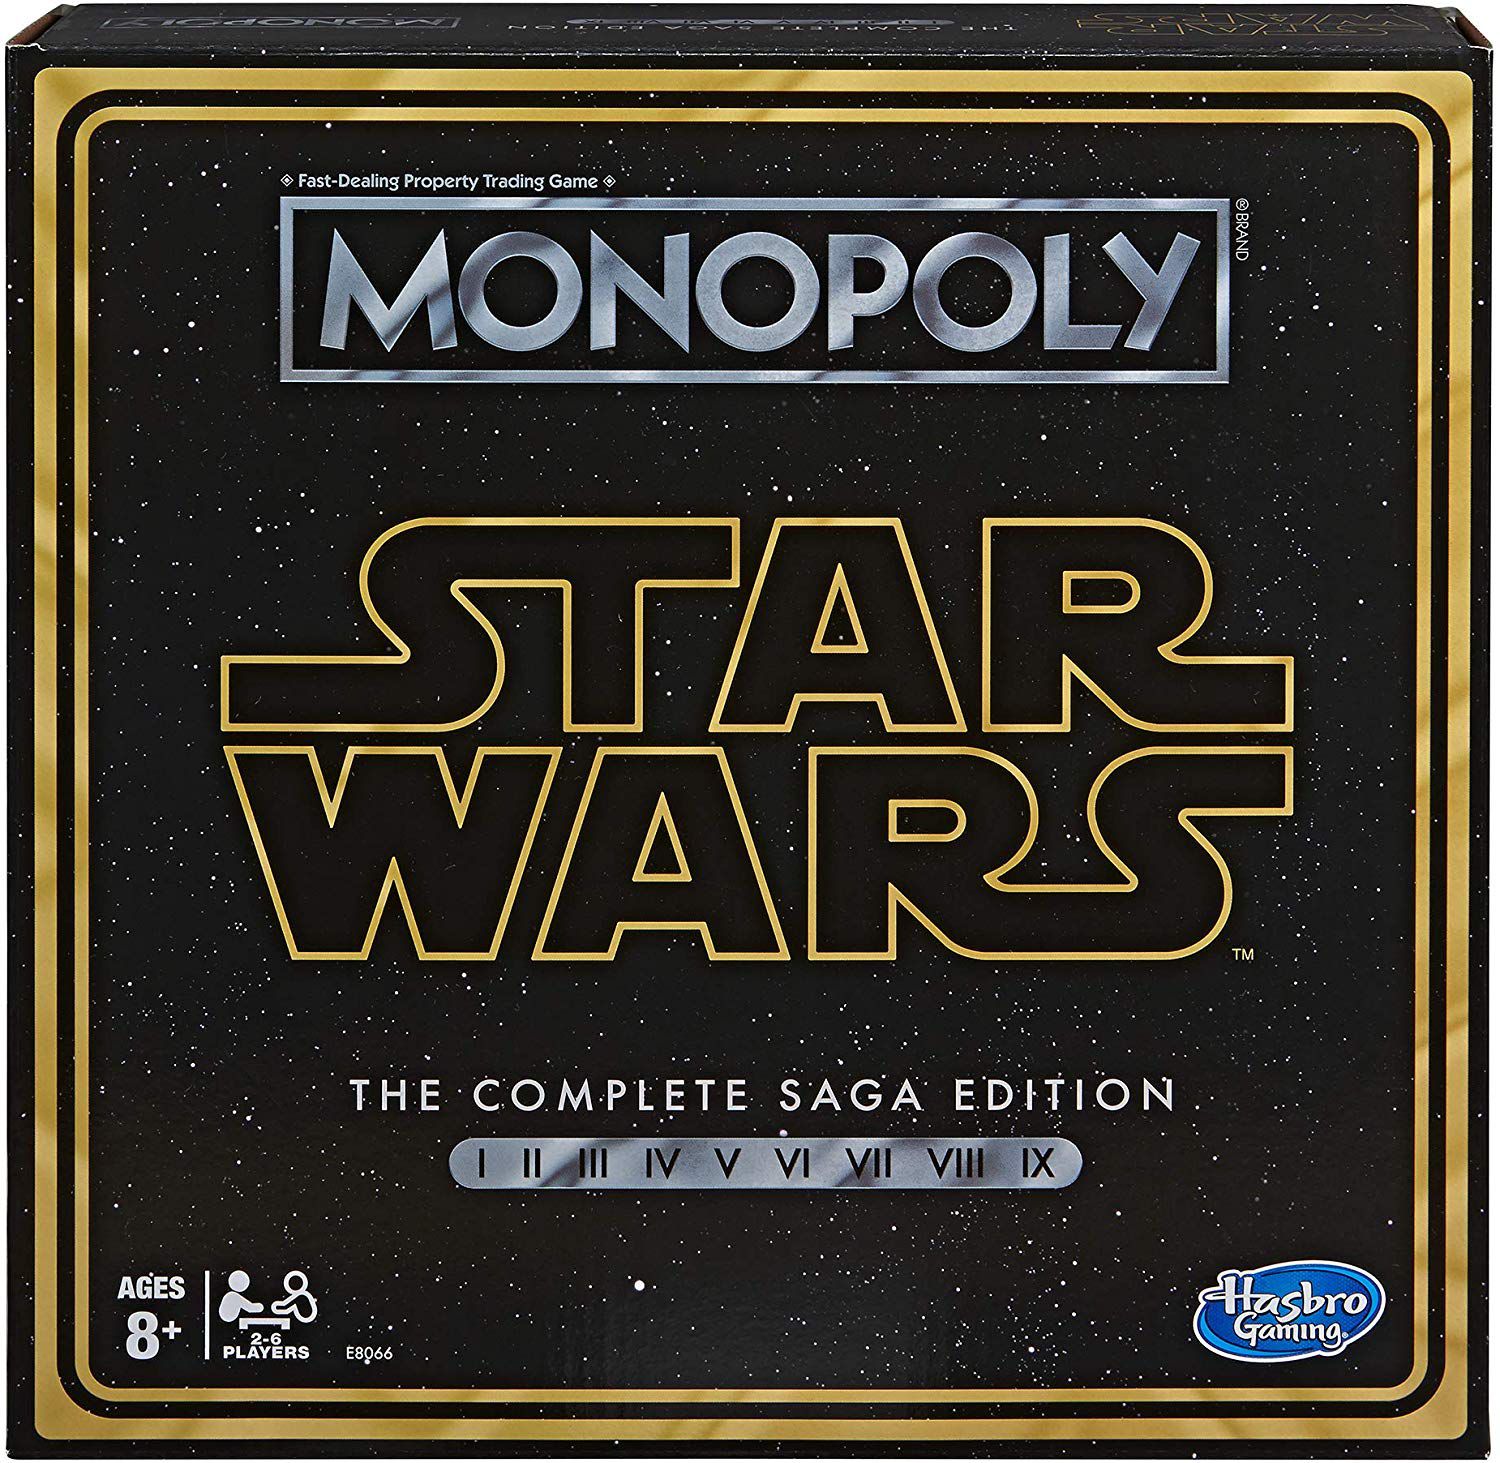 Jogo Monopoly Star Wars The Child - Baby Yoda Hasbro